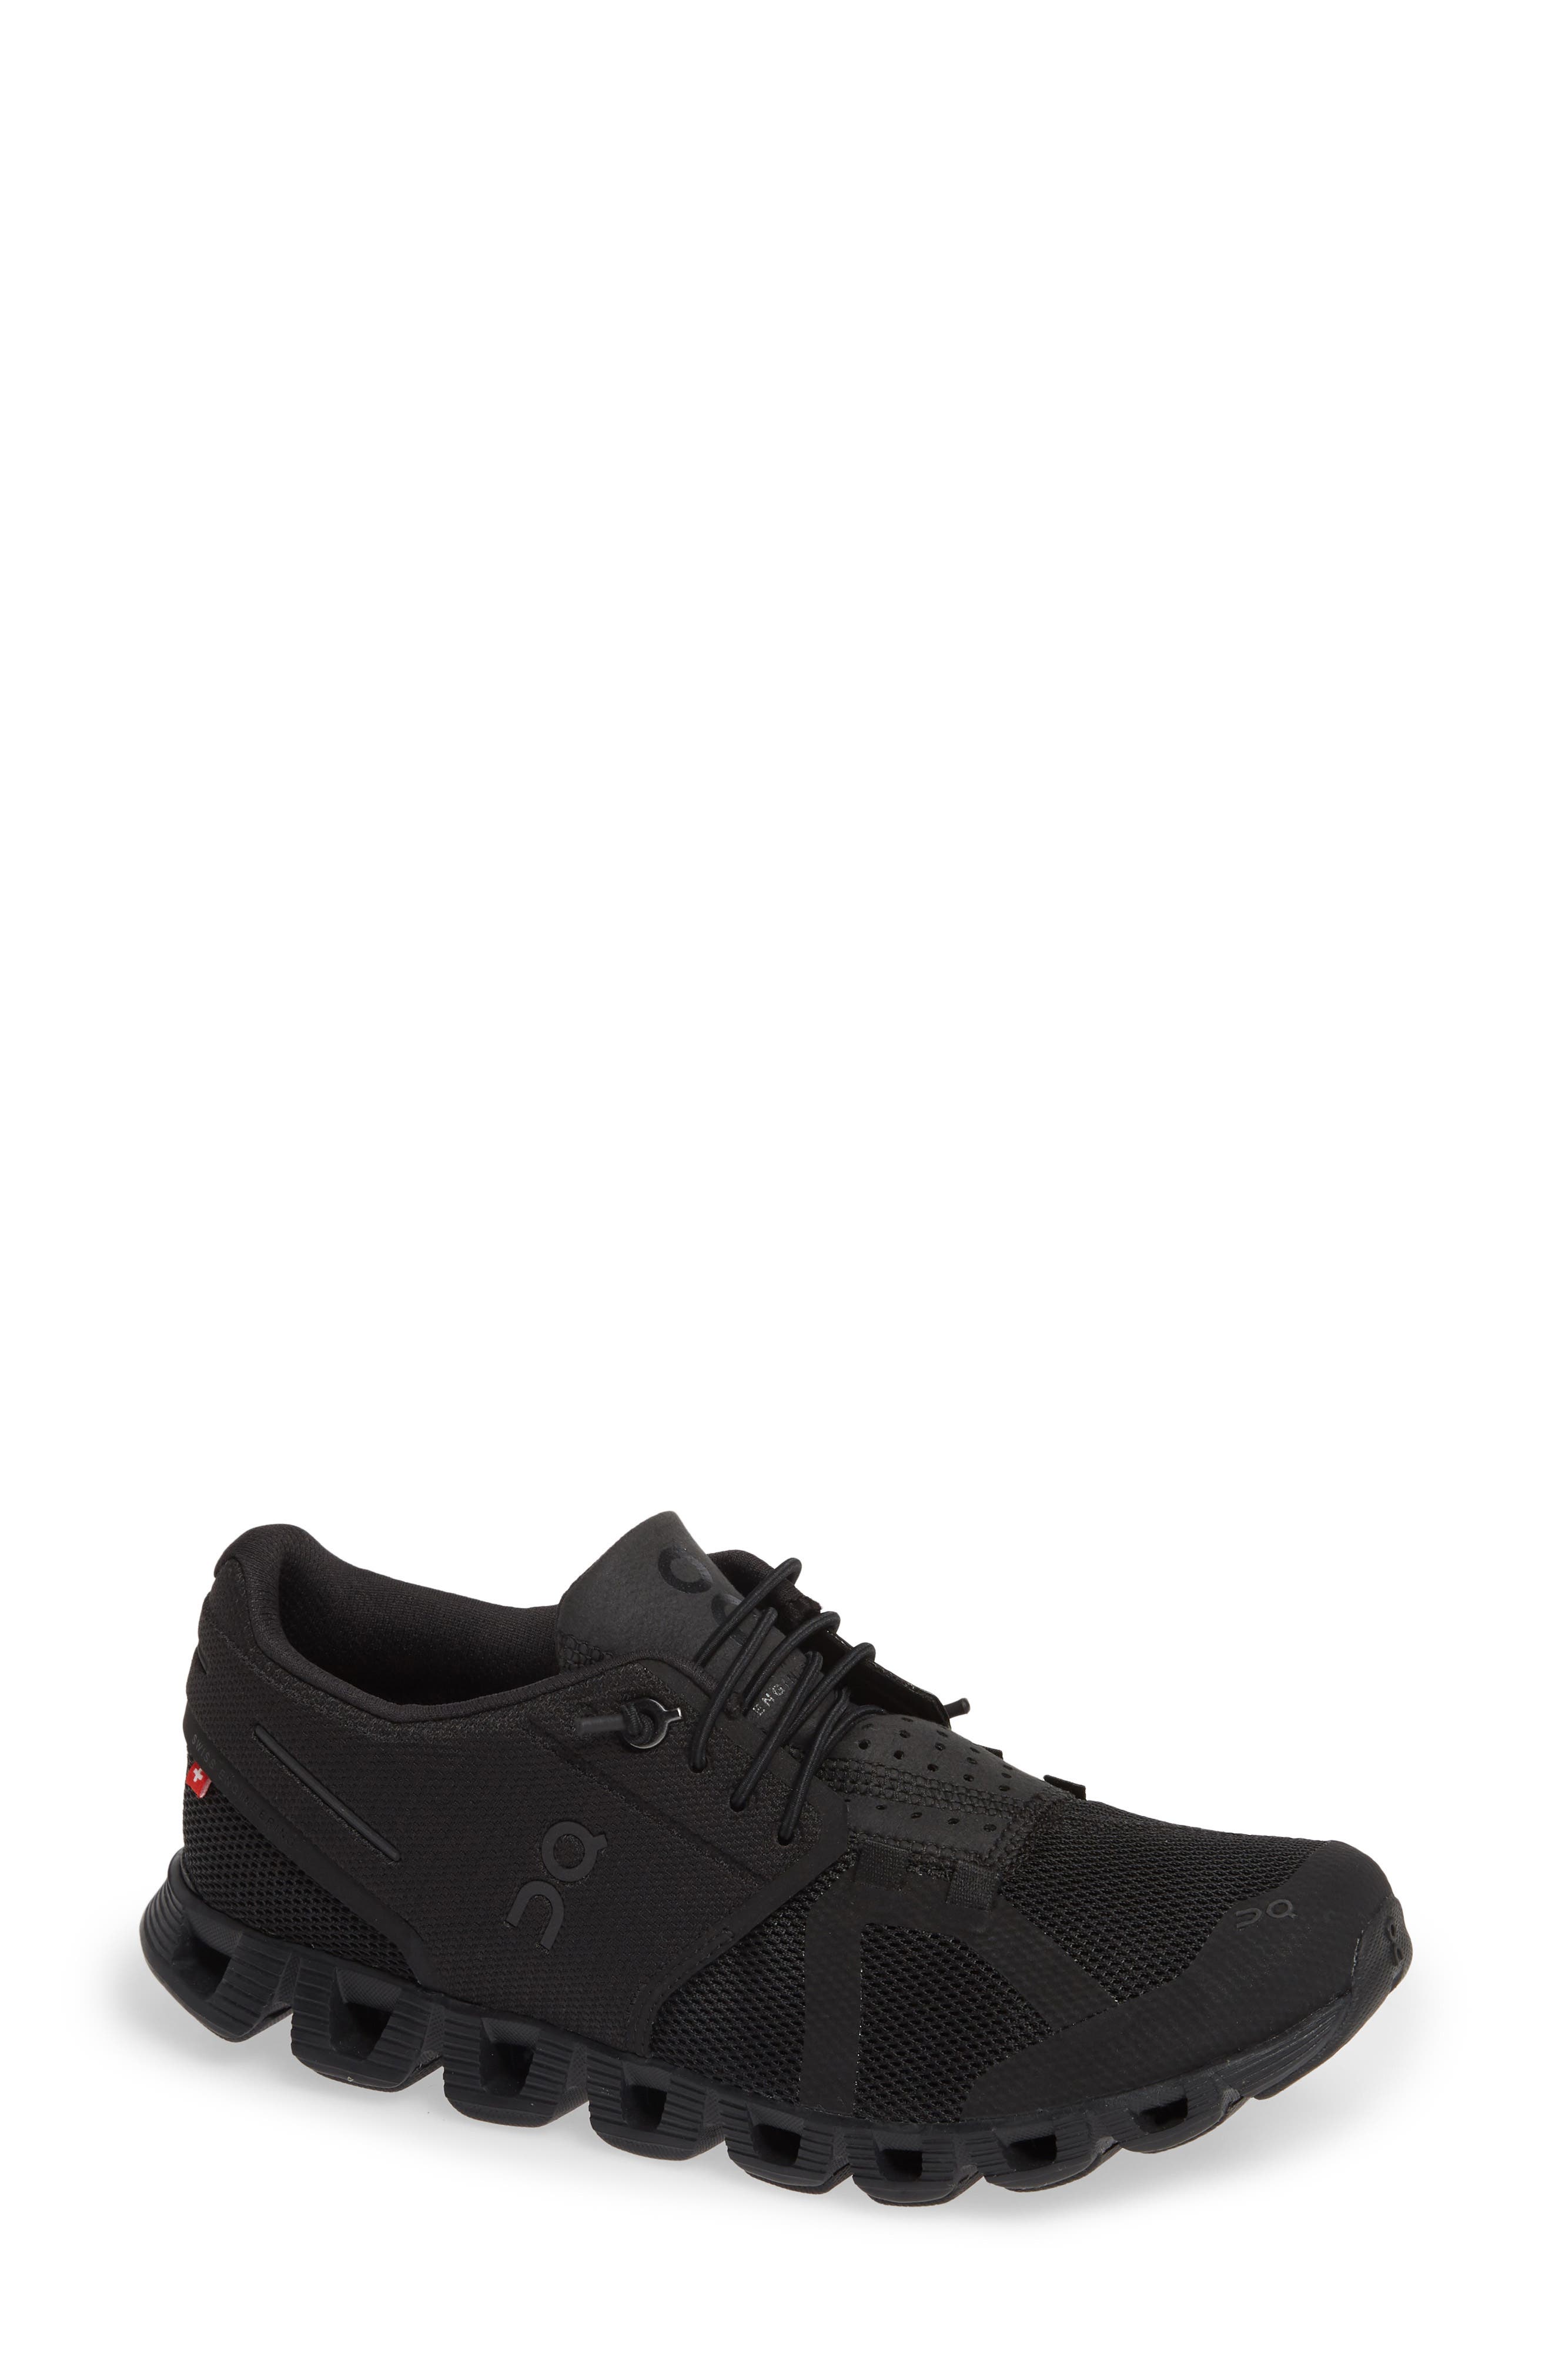 Women's Black Sneakers \u0026 Athletic Shoes 